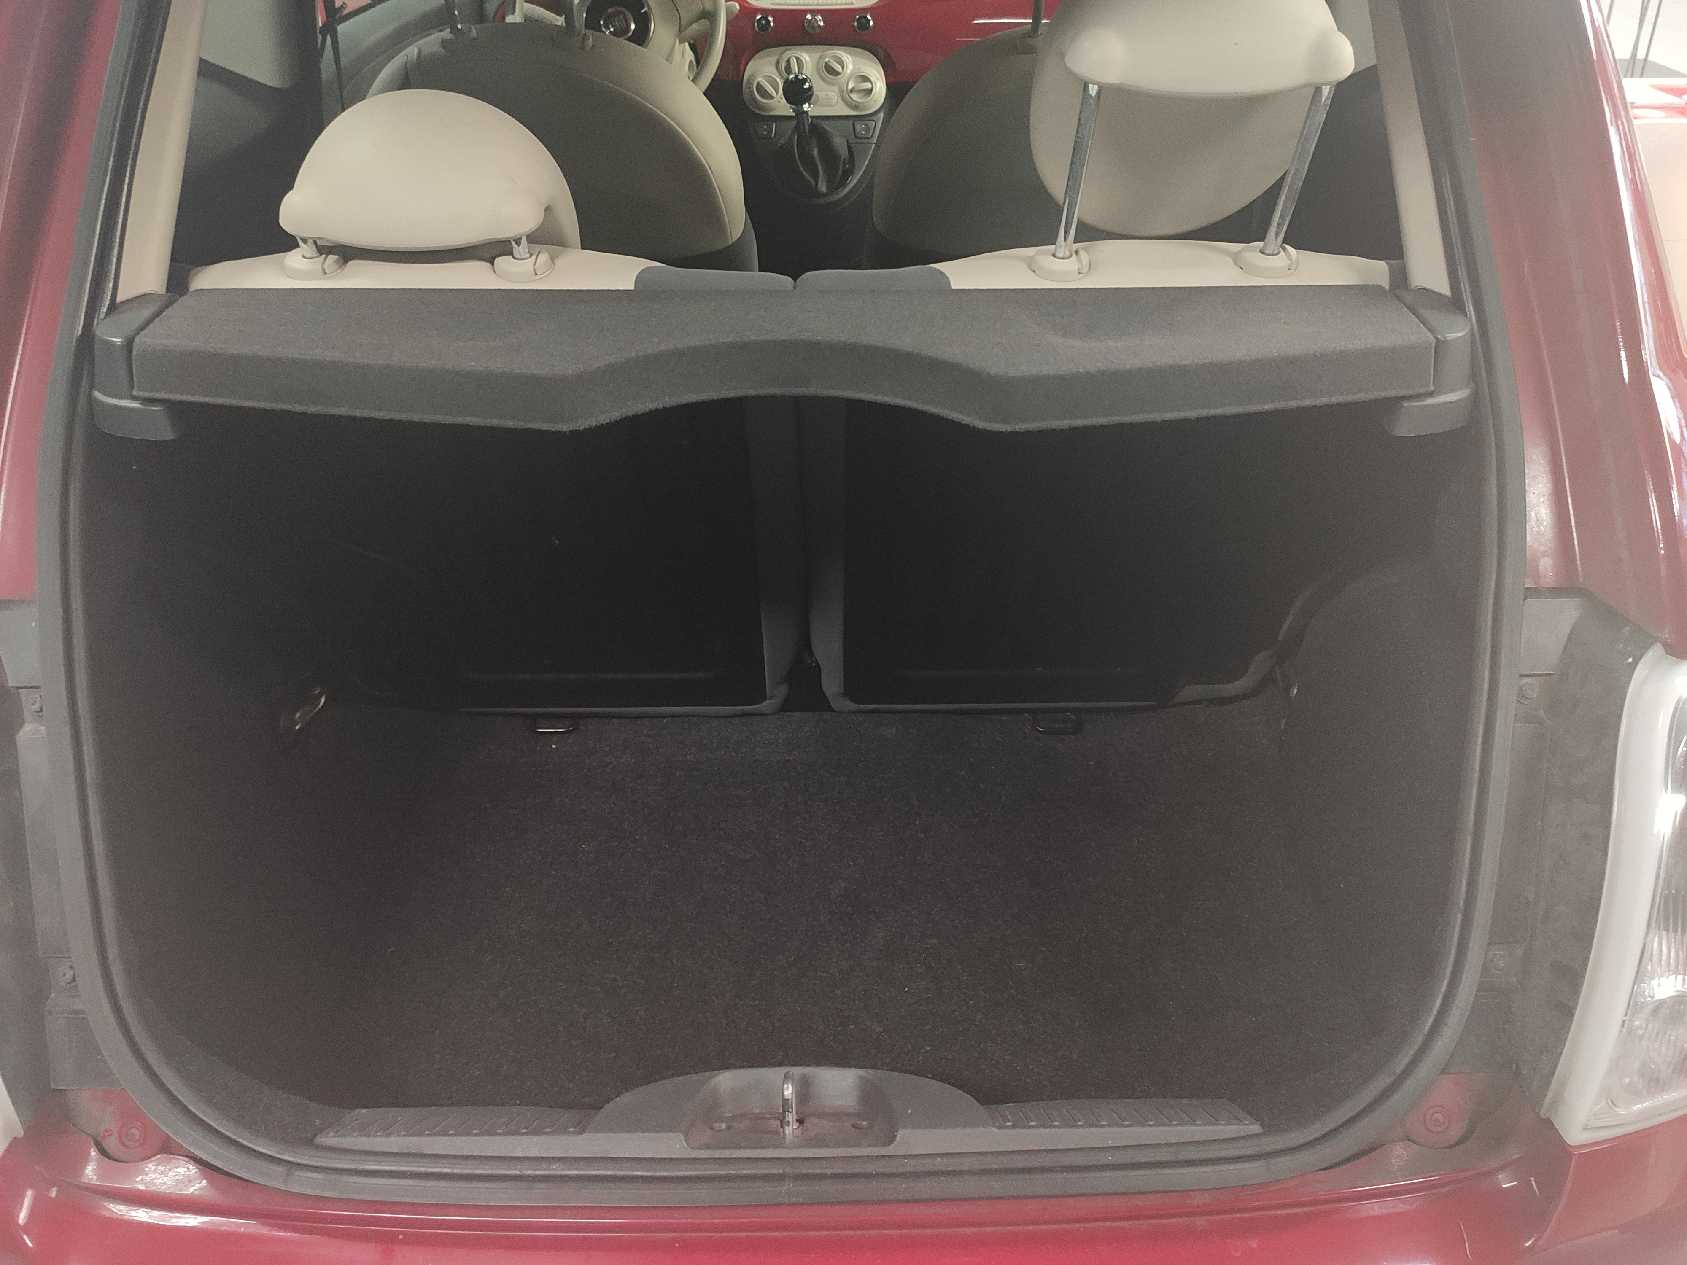 Fiat 500 - Er der plads til en barnevogn?